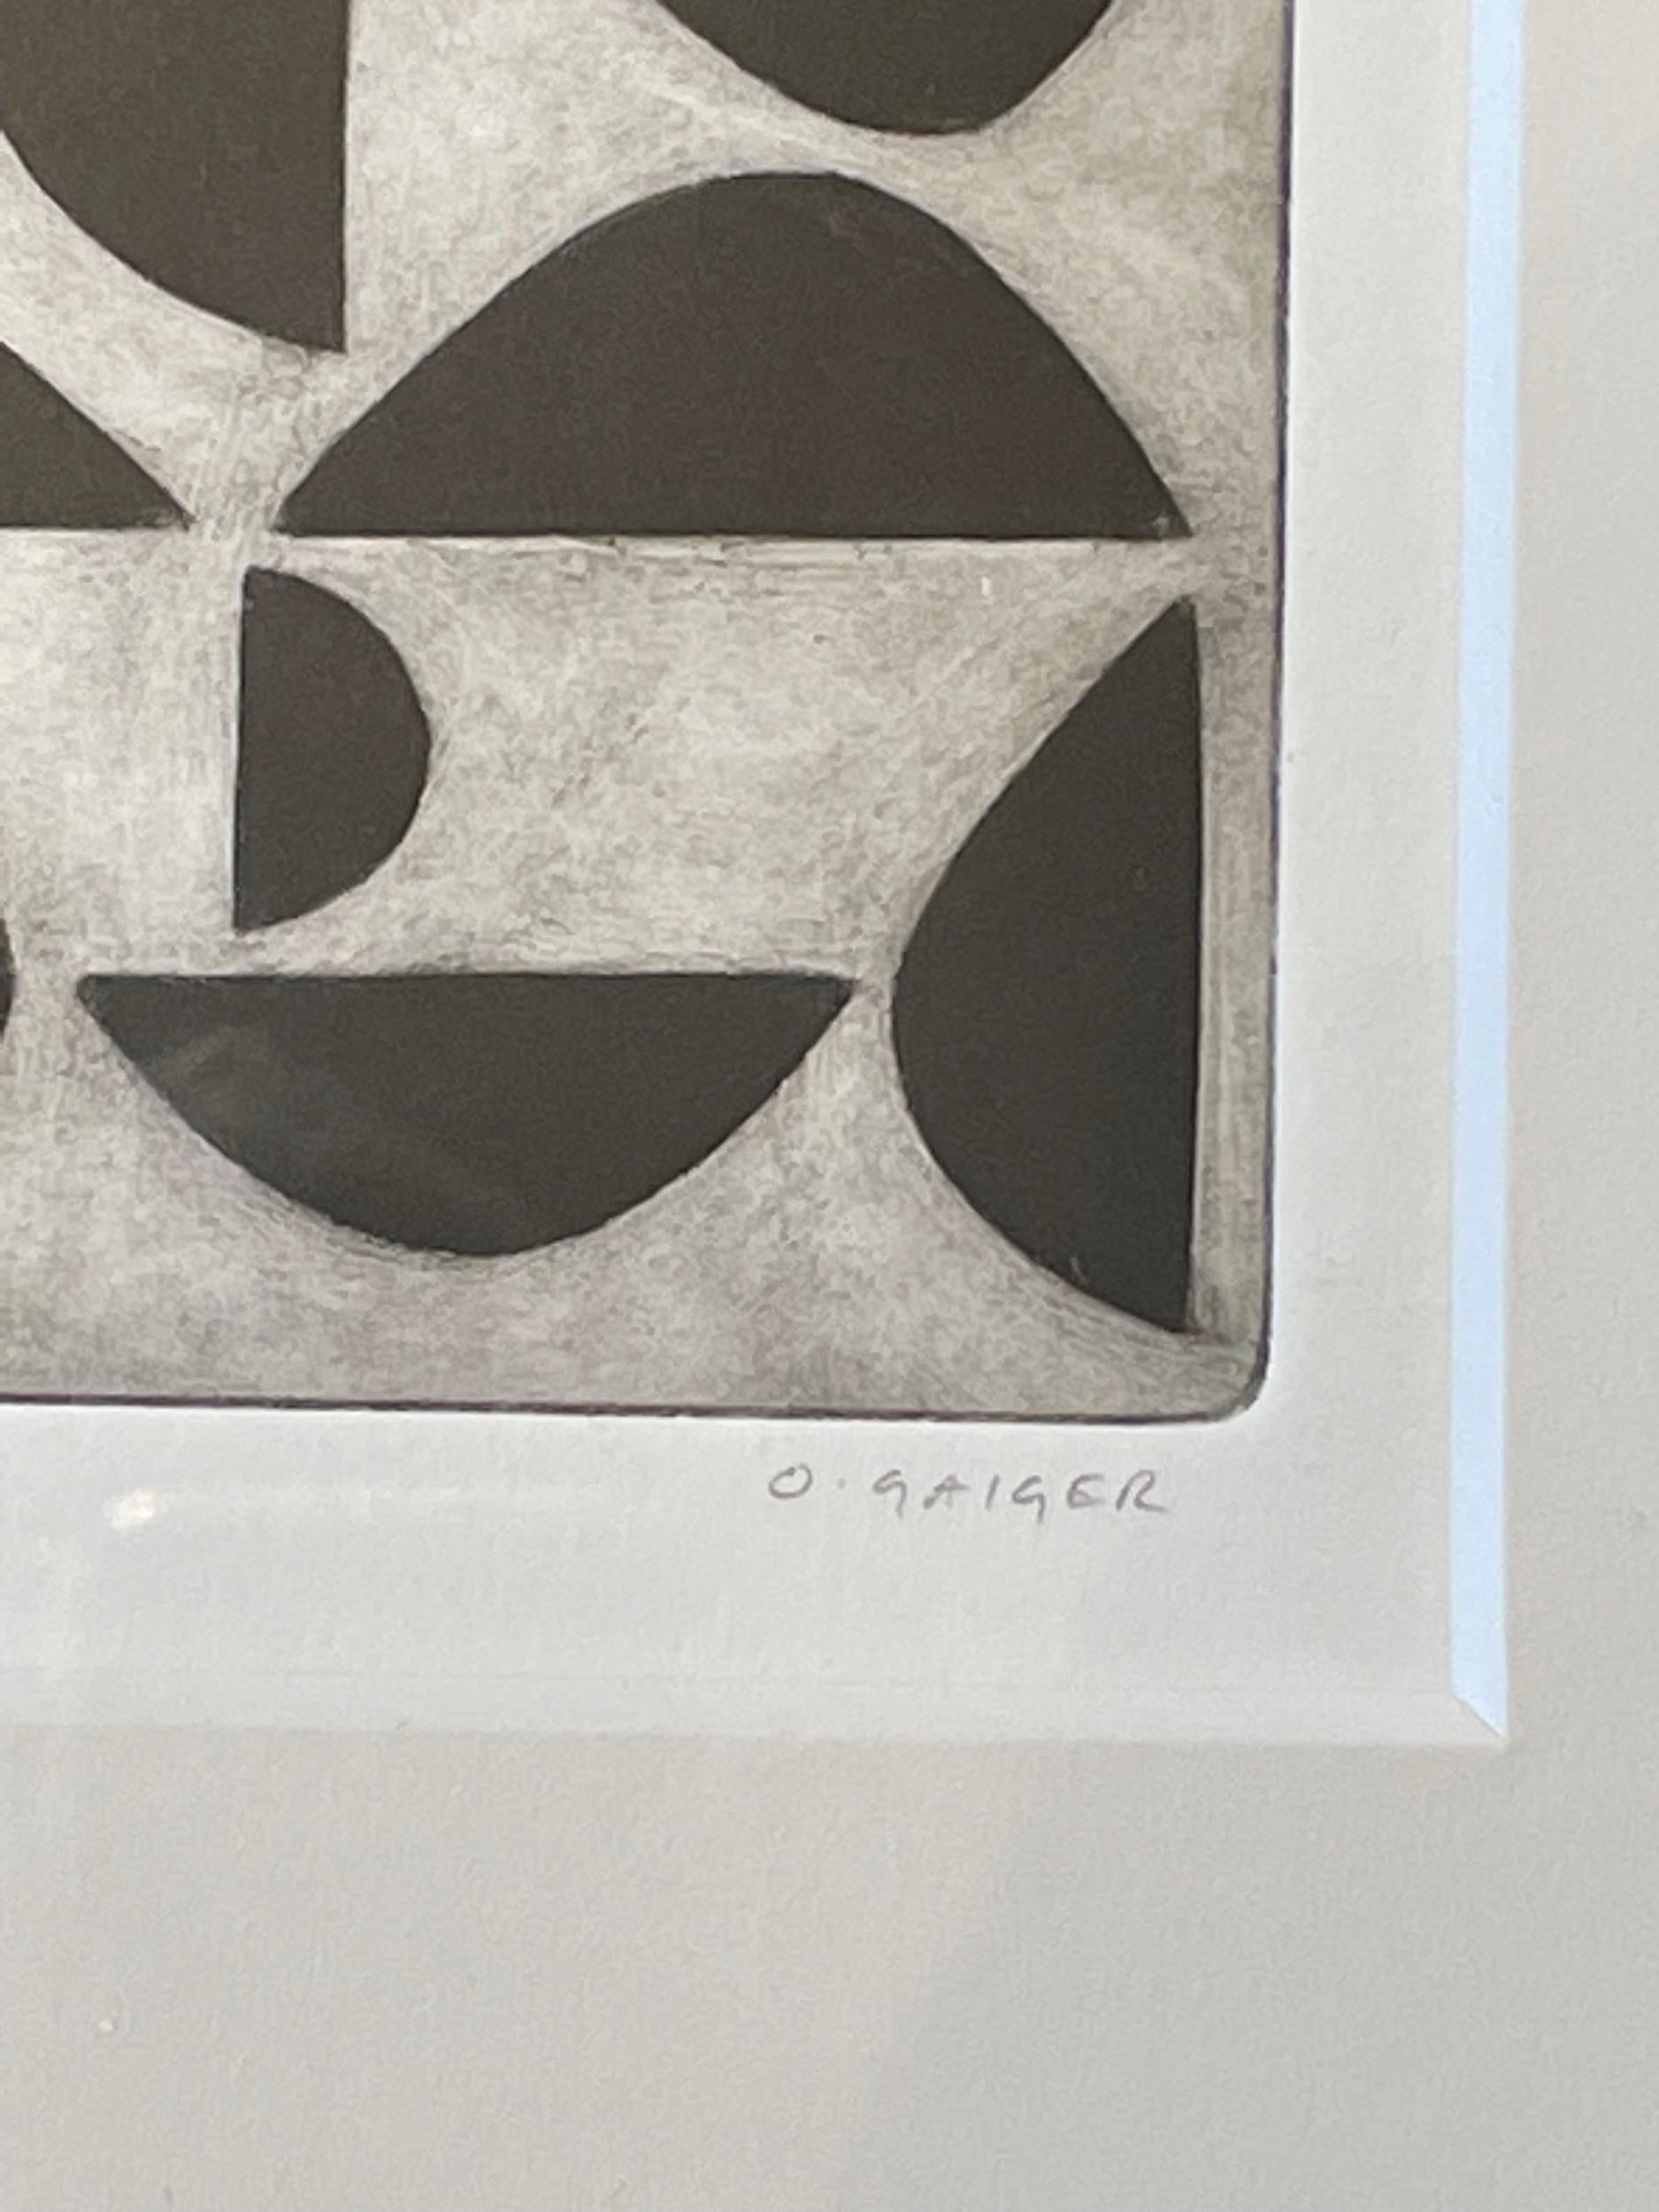 Gravure abstraite contemporaine en noir et blanc de l'artiste anglais Oliver Gaiger.
Maté et encadré dans un cadre en bois gris anthracite.
Fait partie d'une grande collection de gravures en noir et blanc de l'artiste.
Oliver Gaiger est né en 1972